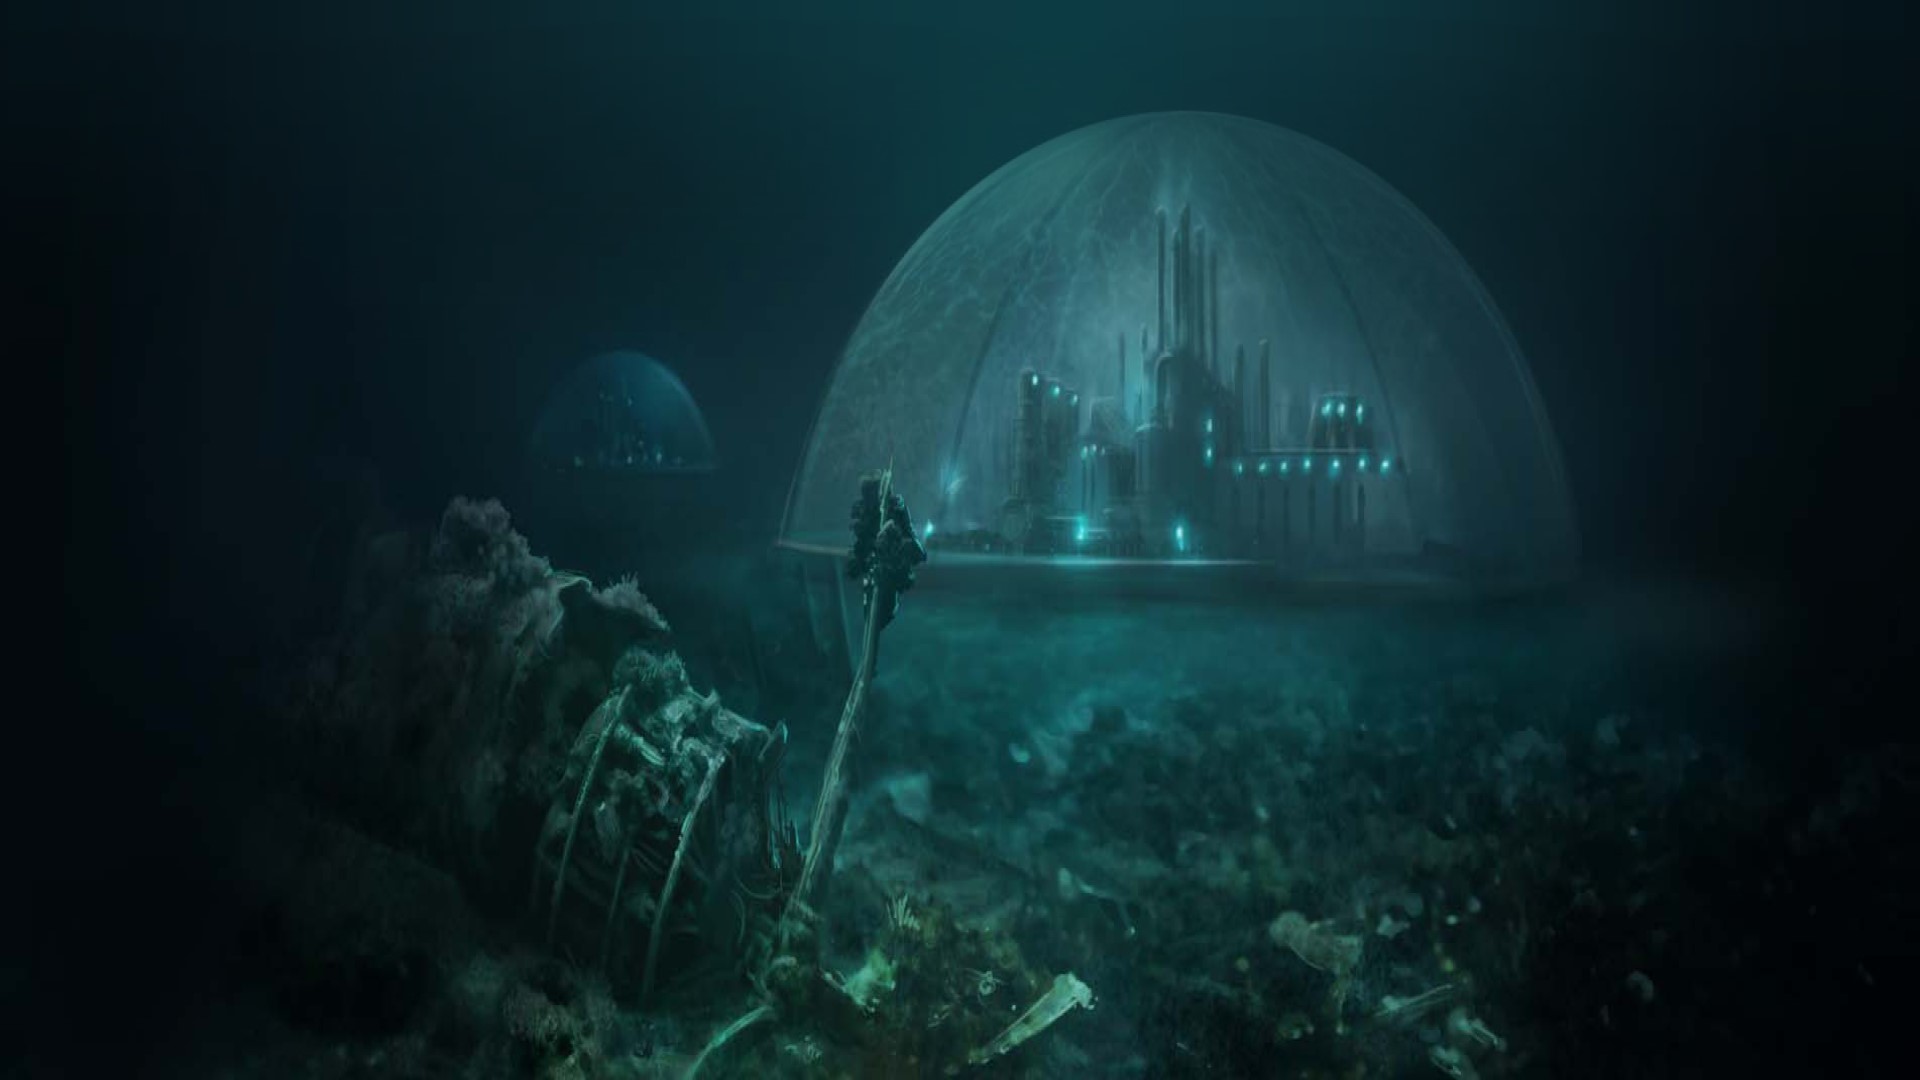 Los mejores juegos de estrategia móvil: subergio. La imagen muestra una ciudad en una cúpula debajo del mar